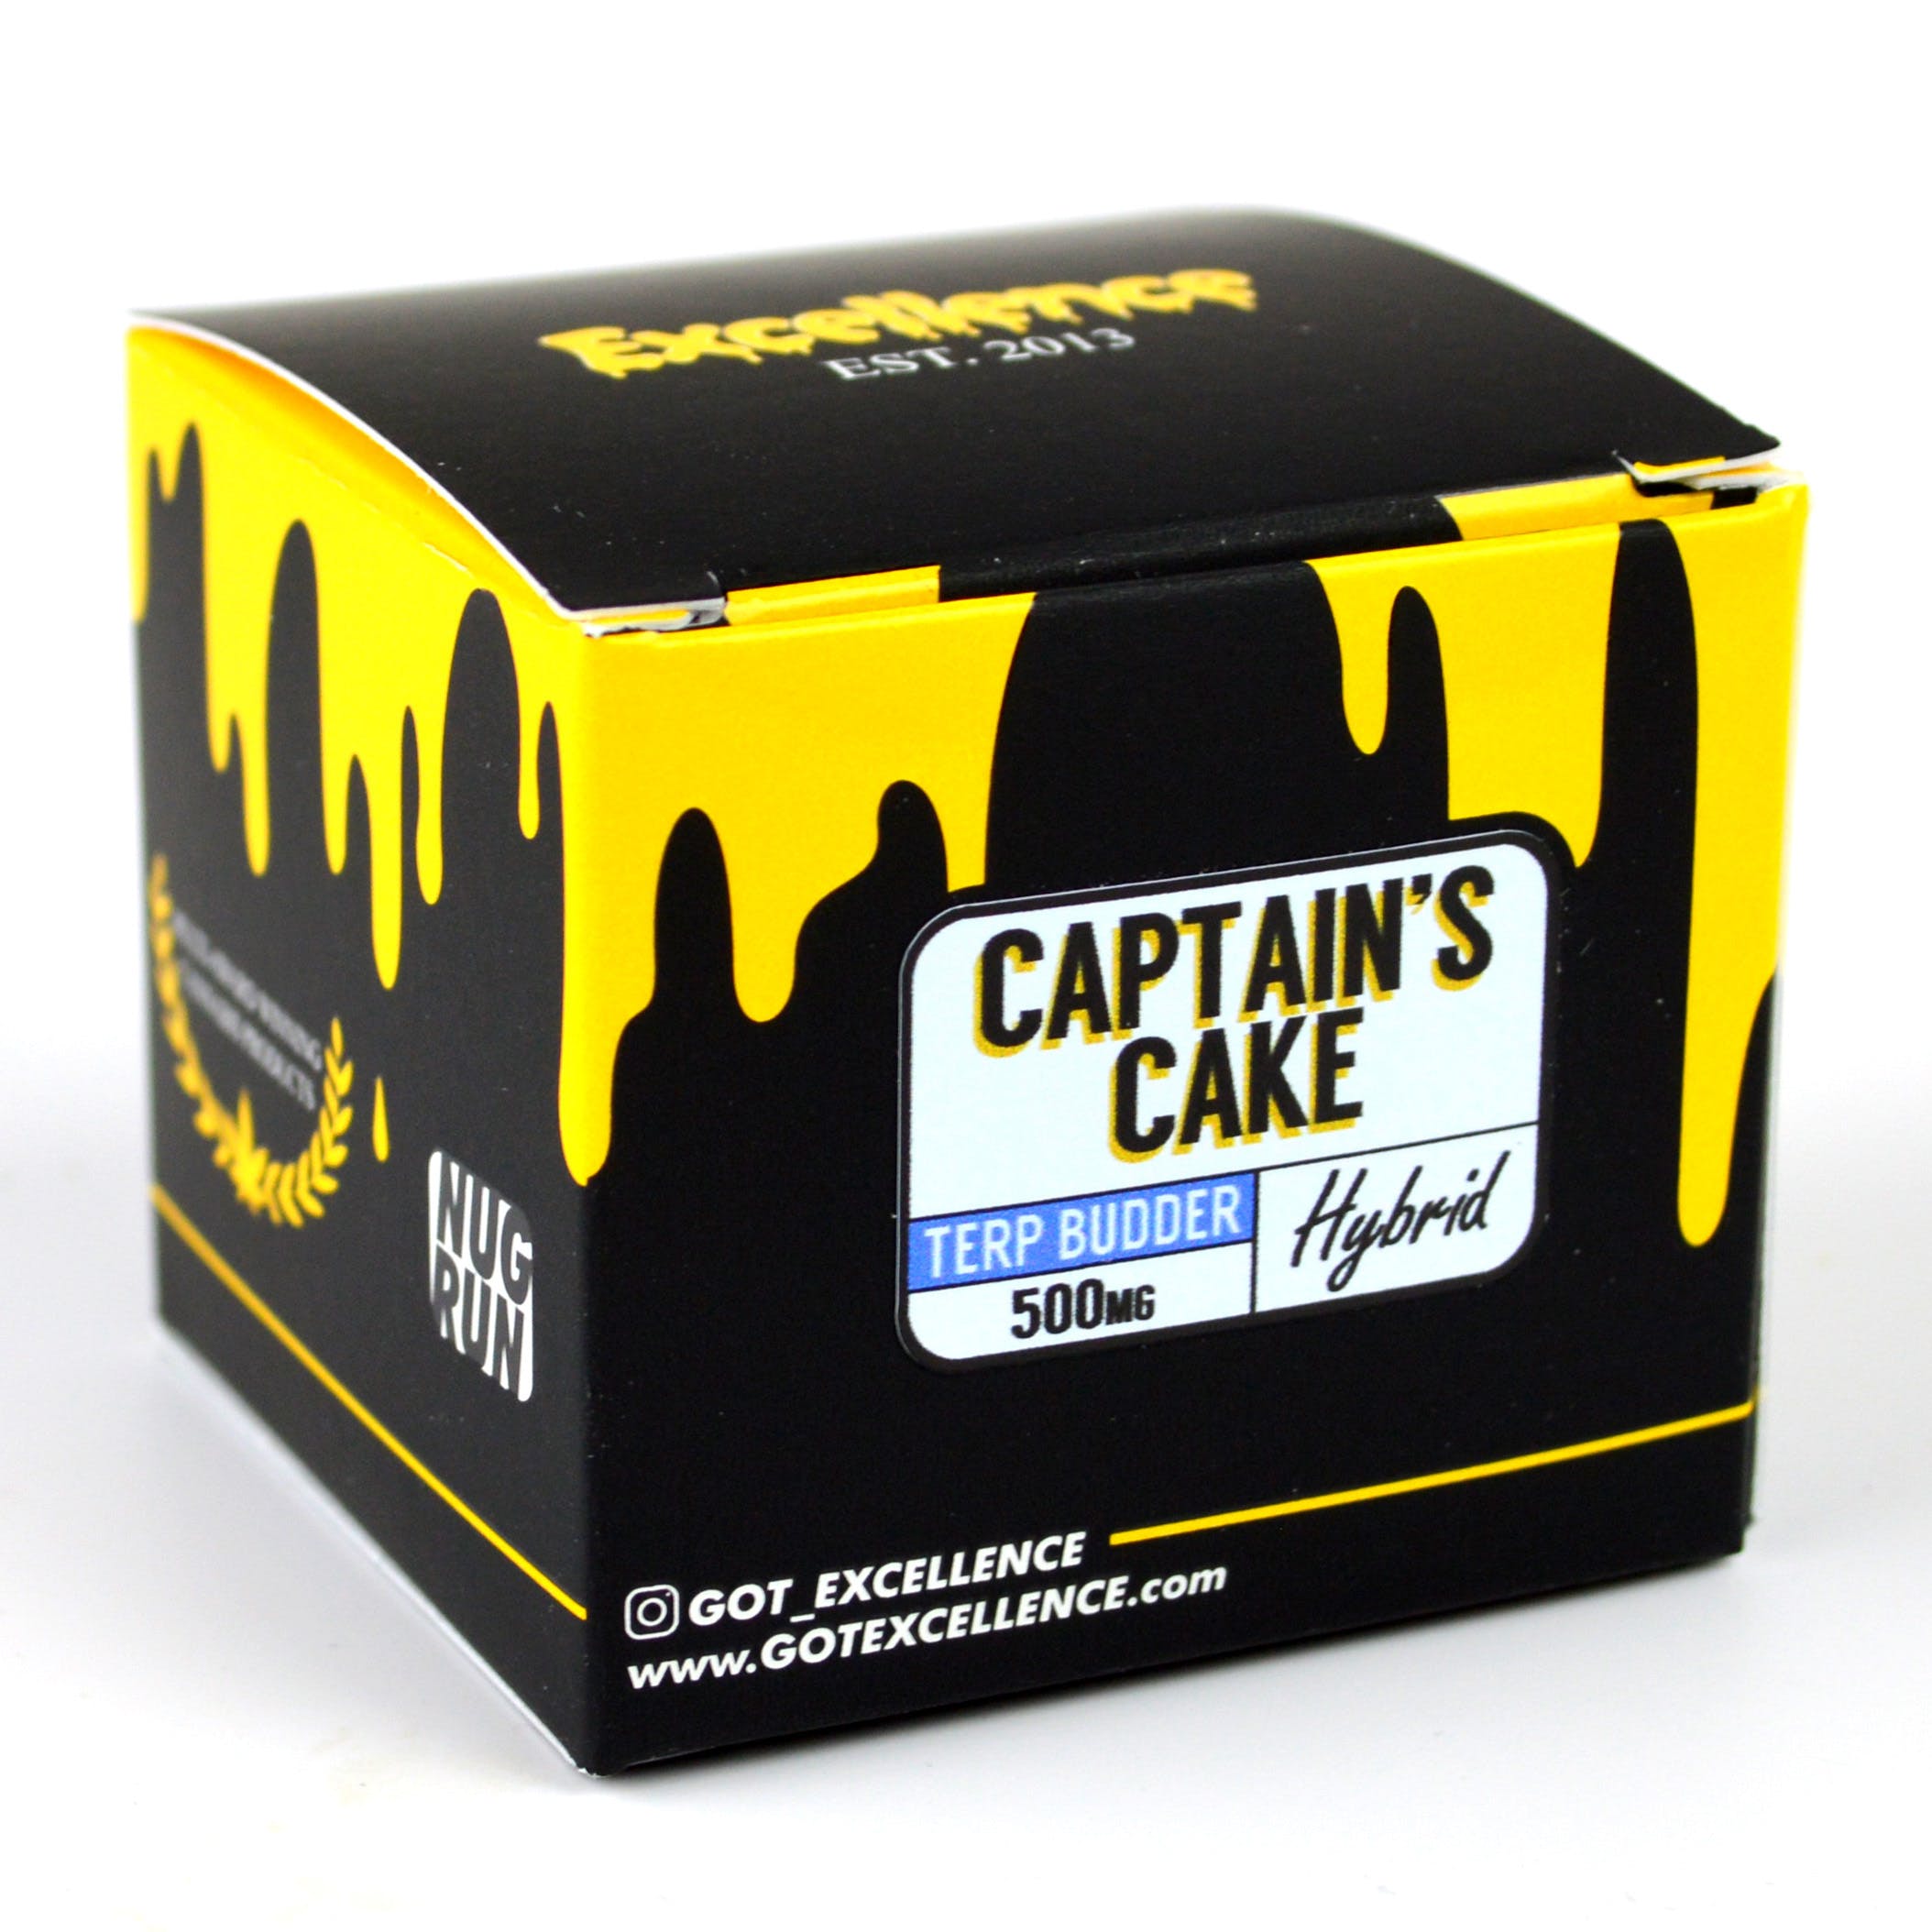 Captain's Cake Terp Budder